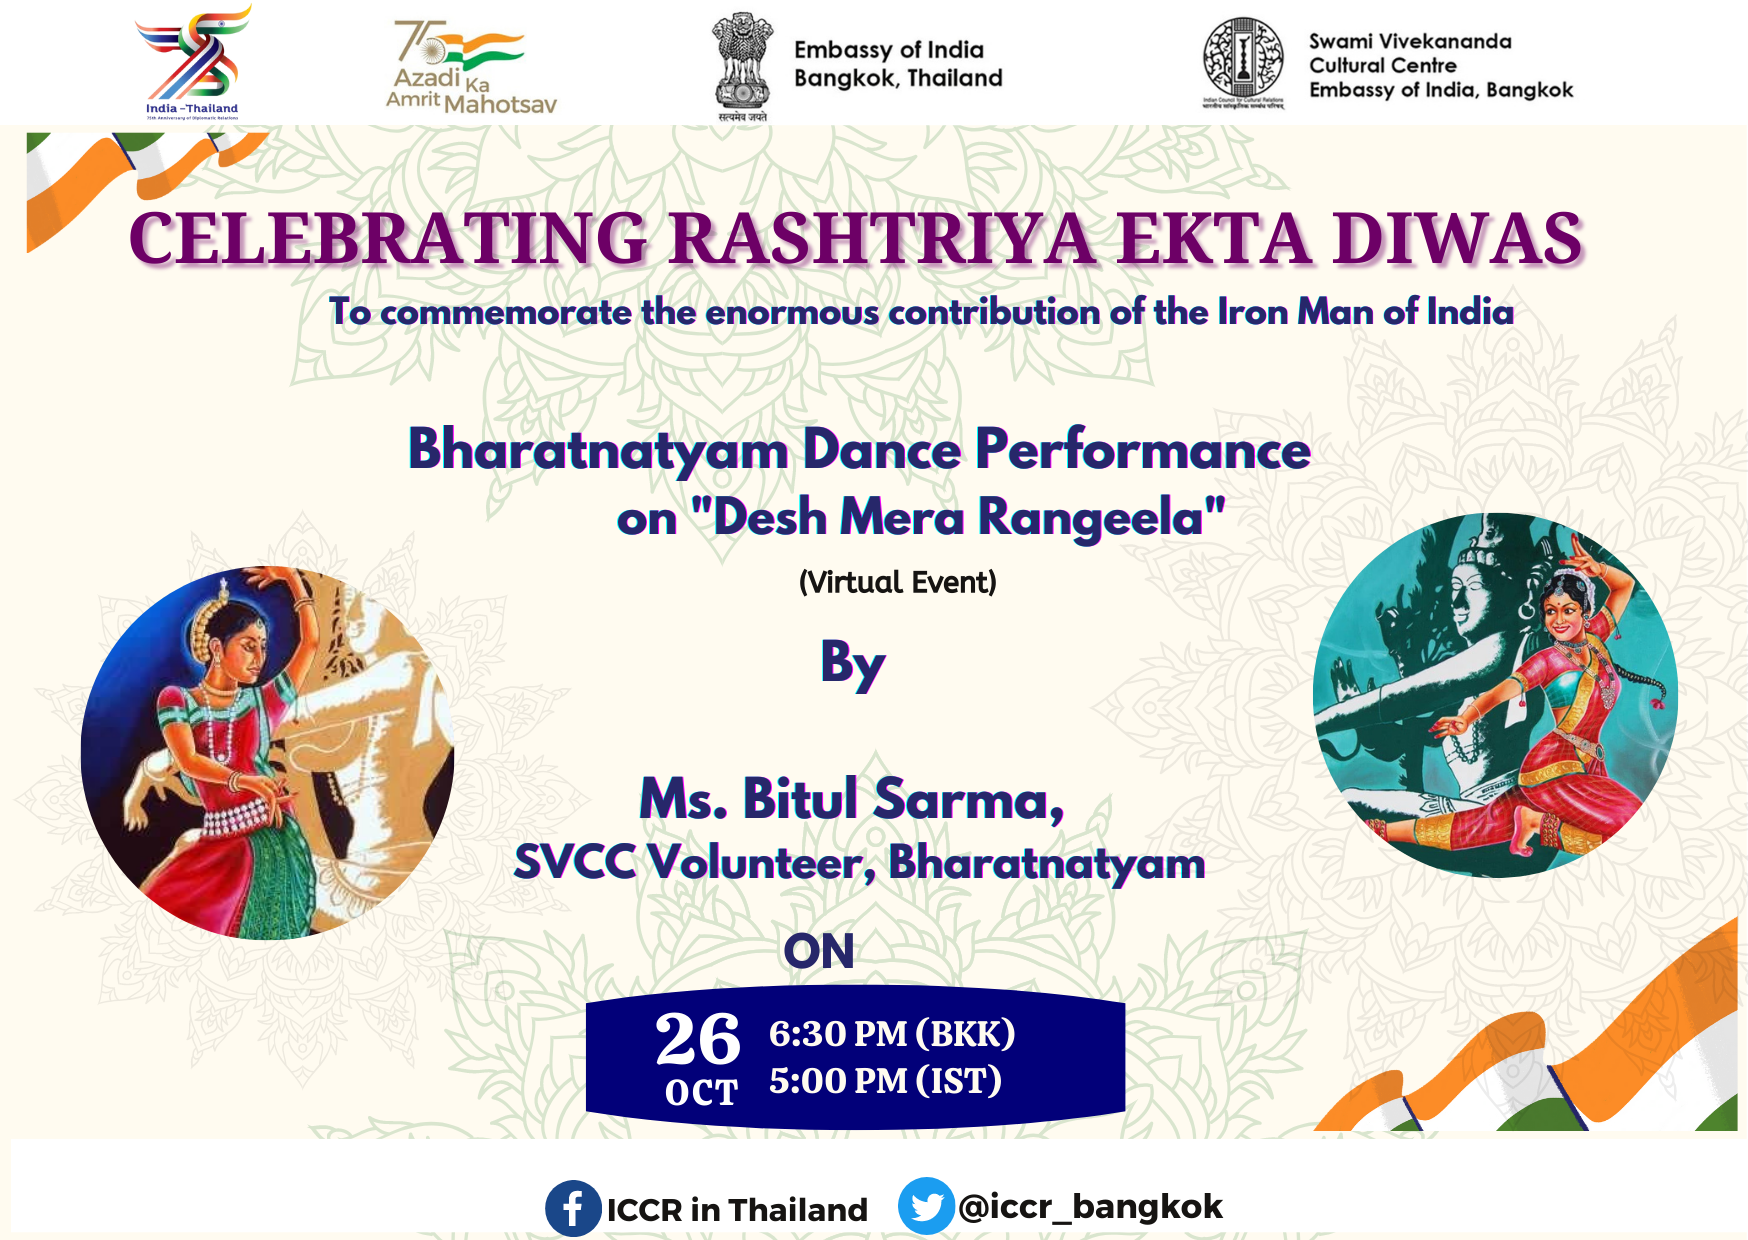 एसवीसीसी, भारतीय दूतावास, बैंकाक ने राष्ट्रीय एकता दिवस सप्ताह के दौरान सुश्री बिटुल सरमा, एसवीसीसी स्वयंसेवी द्वारा देशभक्ति गीत "देश मेरा रंगीला" पर भरतनाट्यम नृत्य प्रस्तुत किया